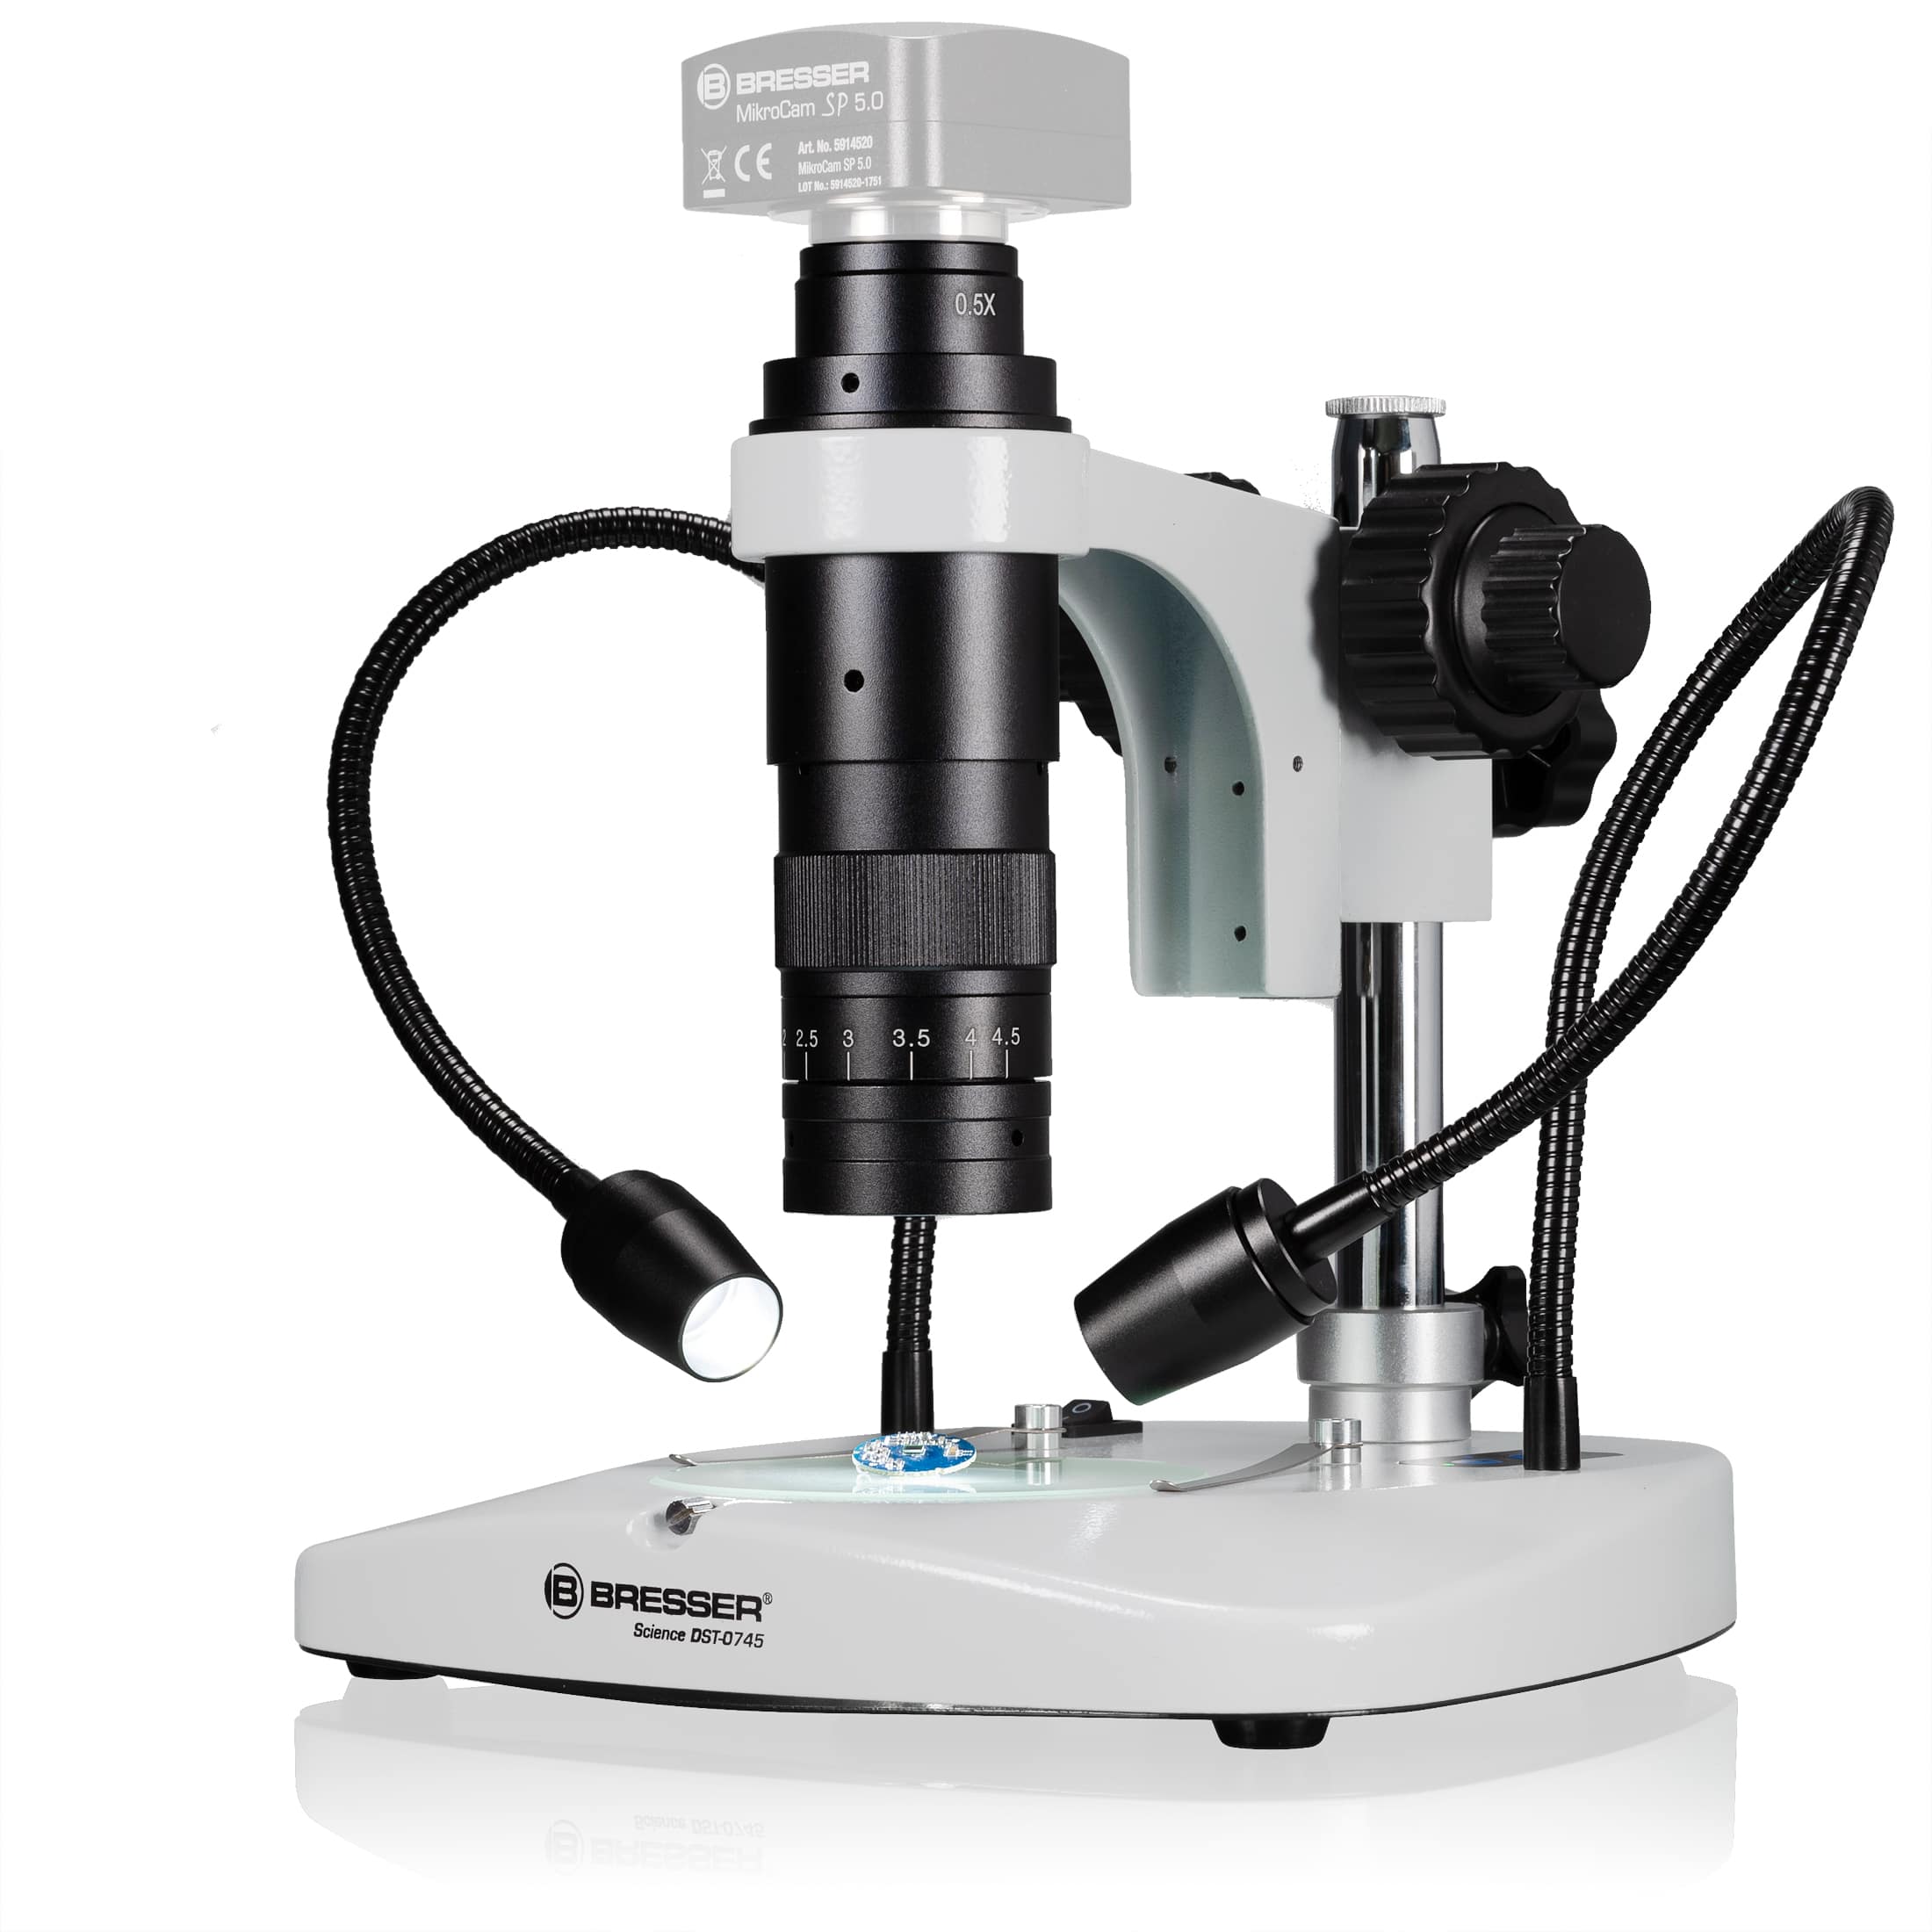   Ottica zoom per fotografare il microscopio e ultra-macro digitali  